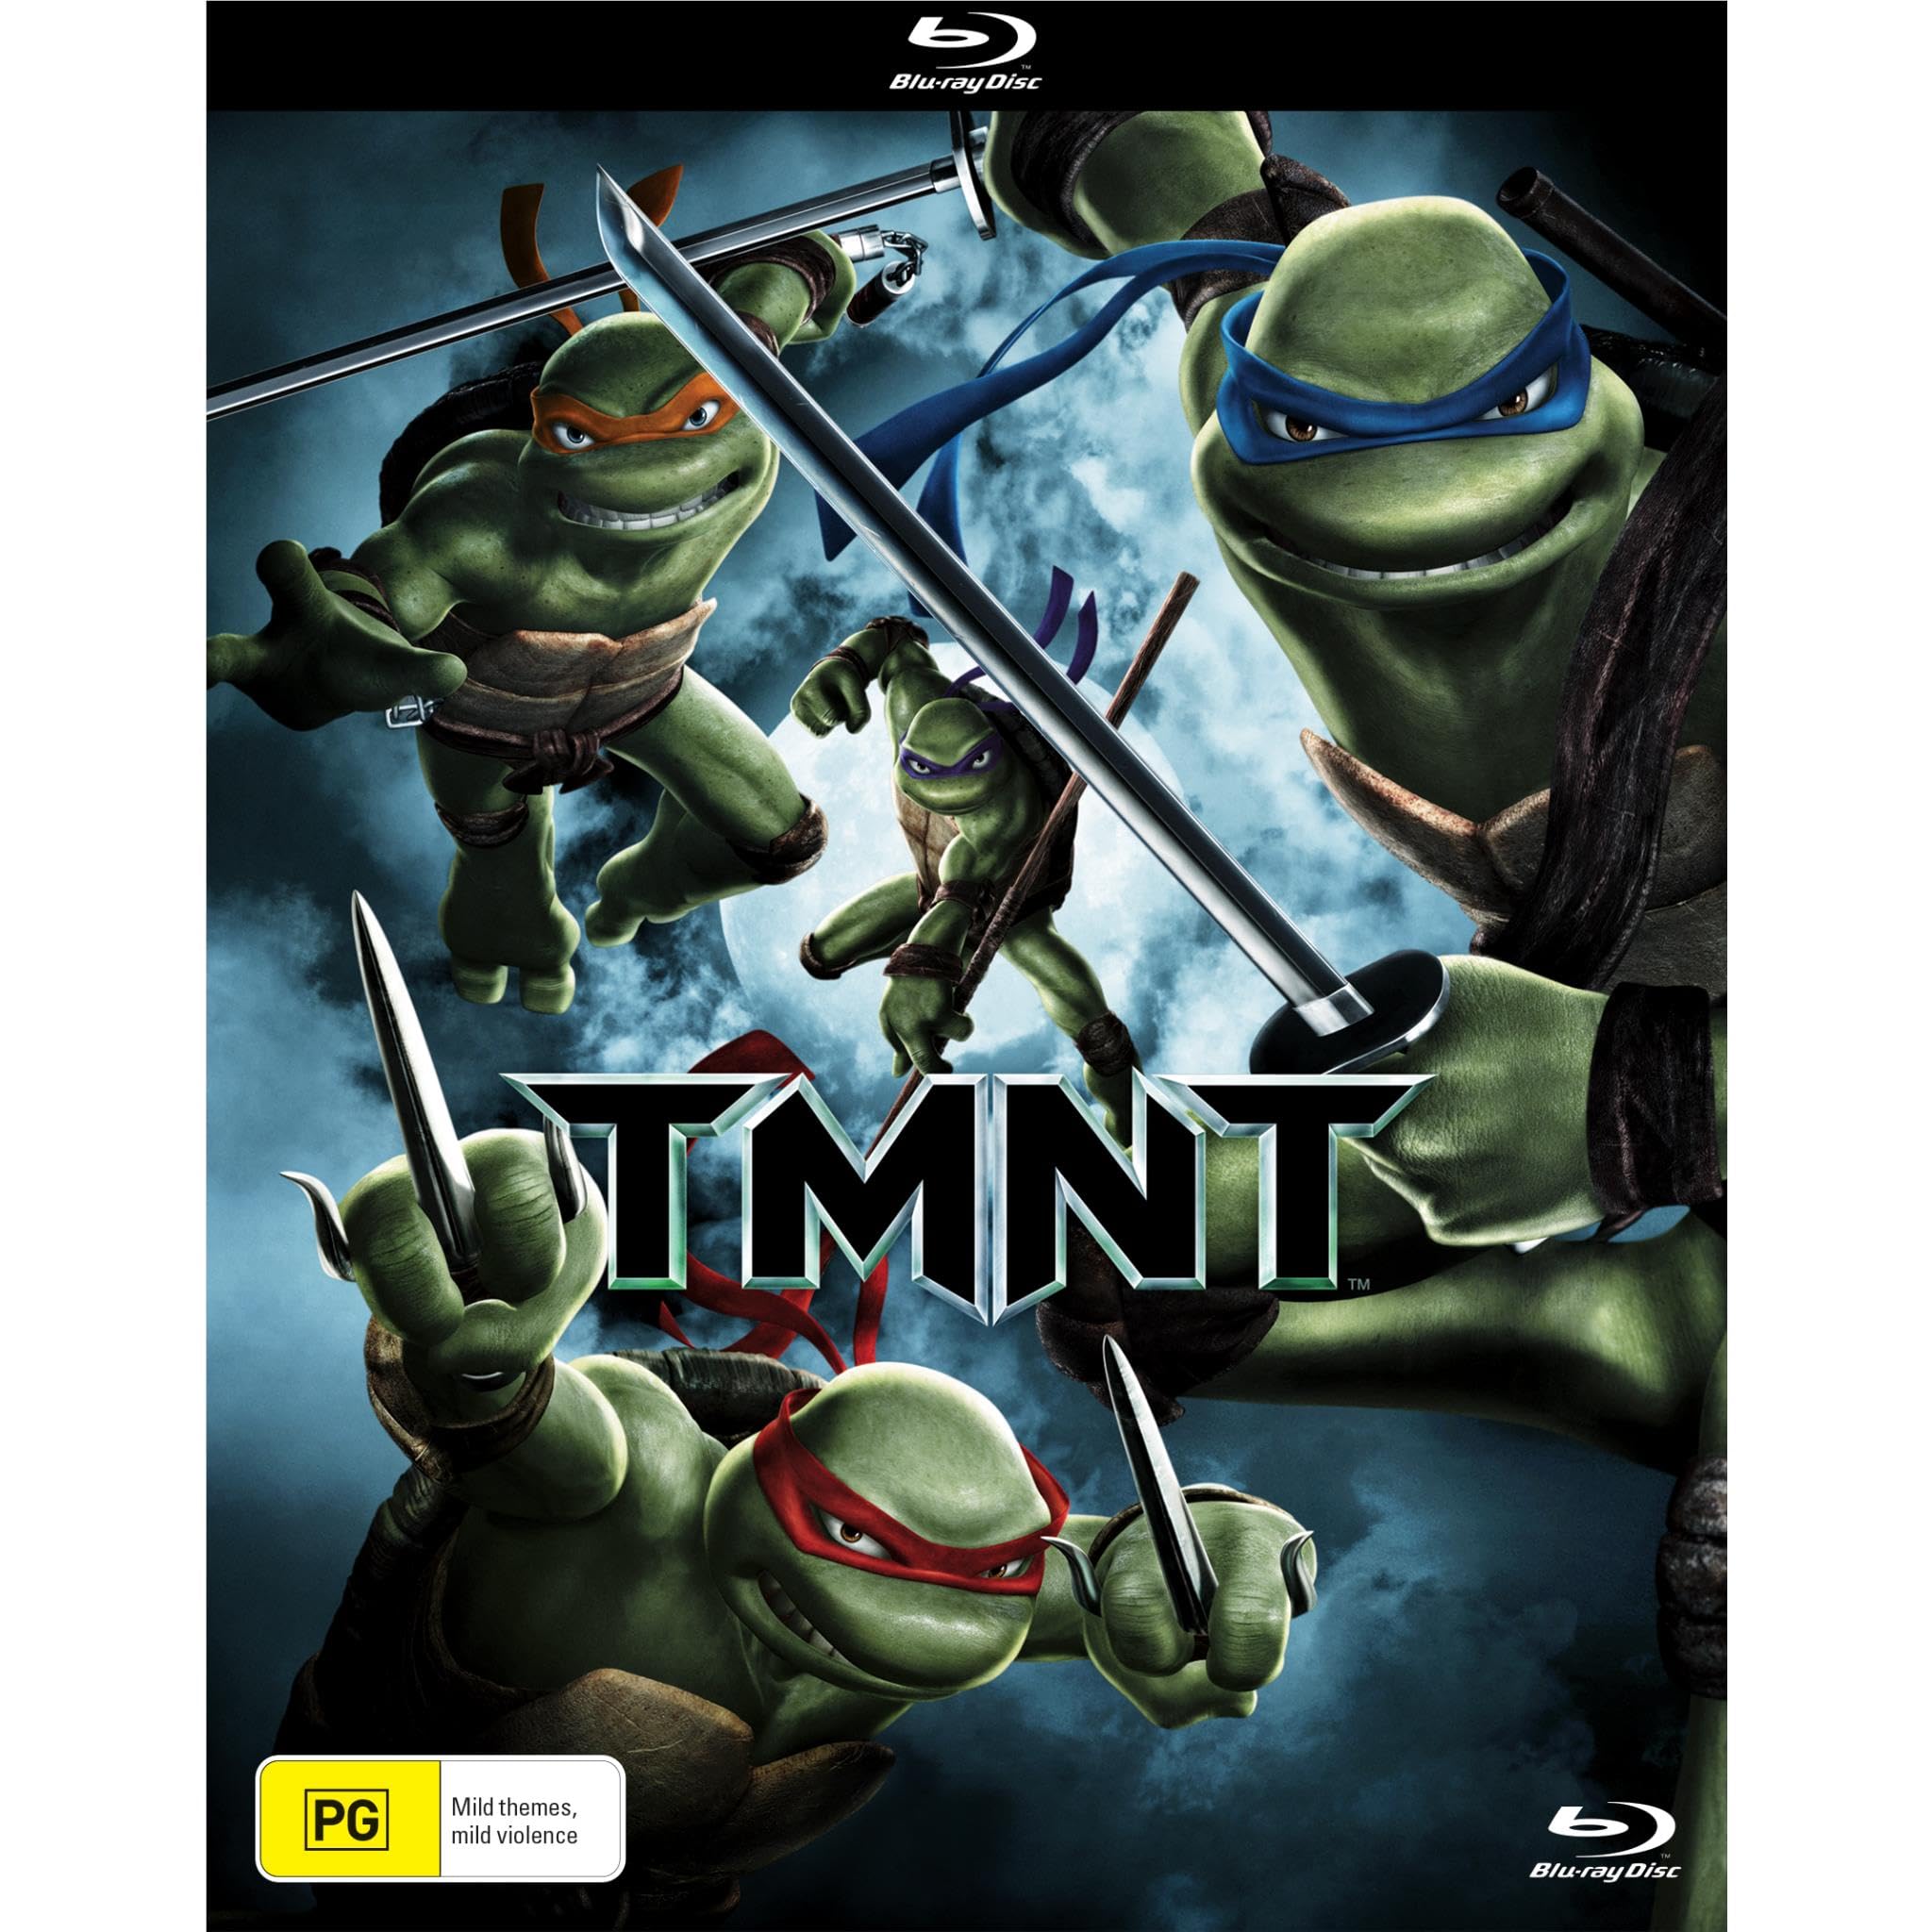 TMNT | Teenage Mutant Ninja Turtles on MovieShack